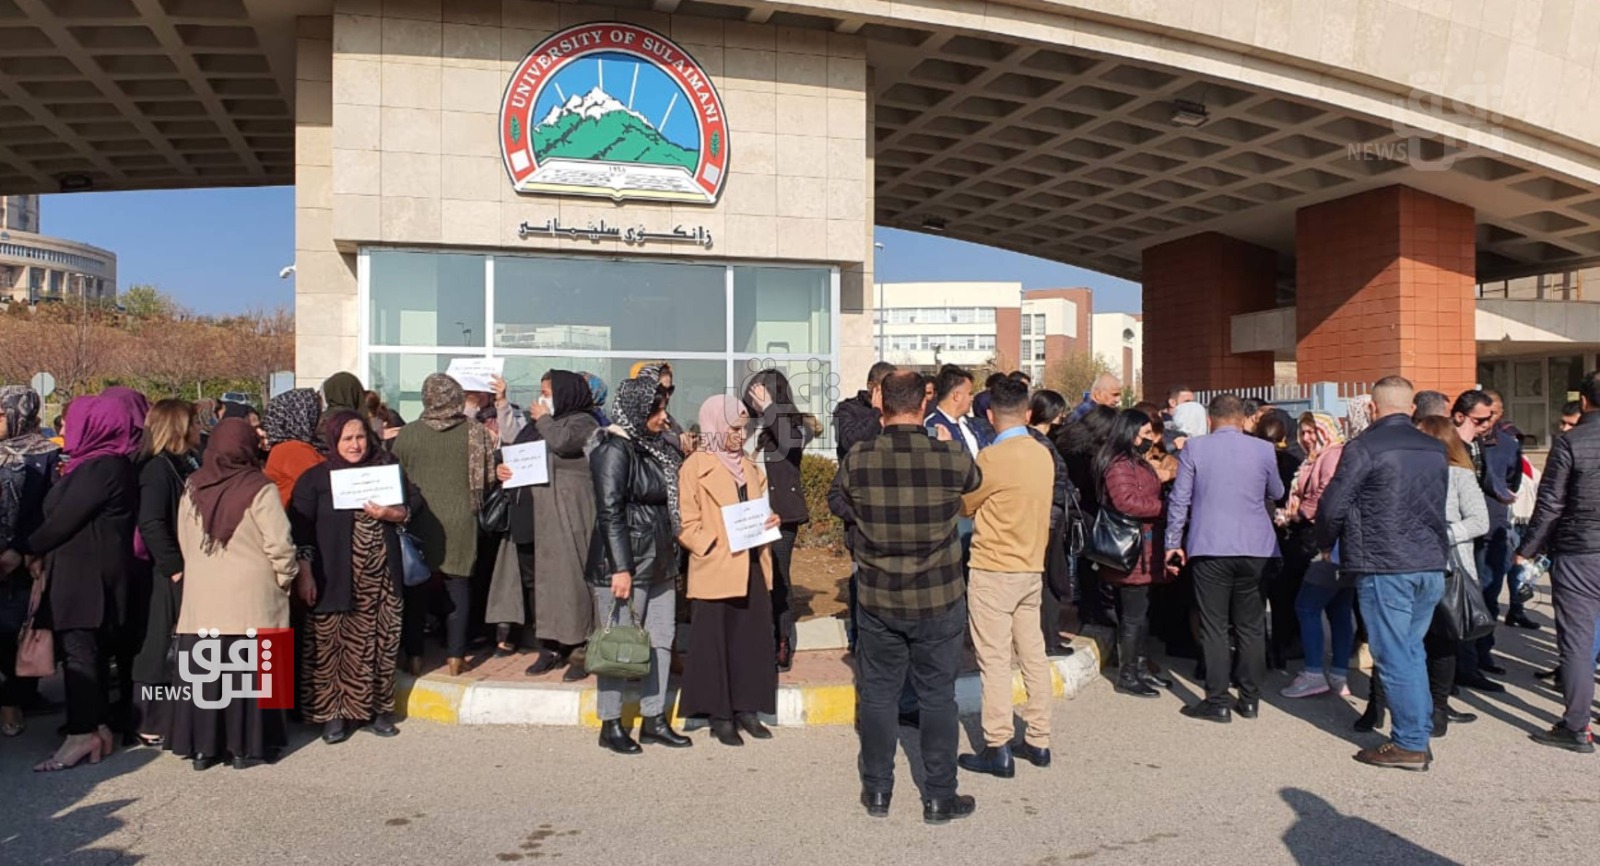 لليوم الثالث.. استمرار احتجاجات أساتذة وموظفي جامعة السليمانية  